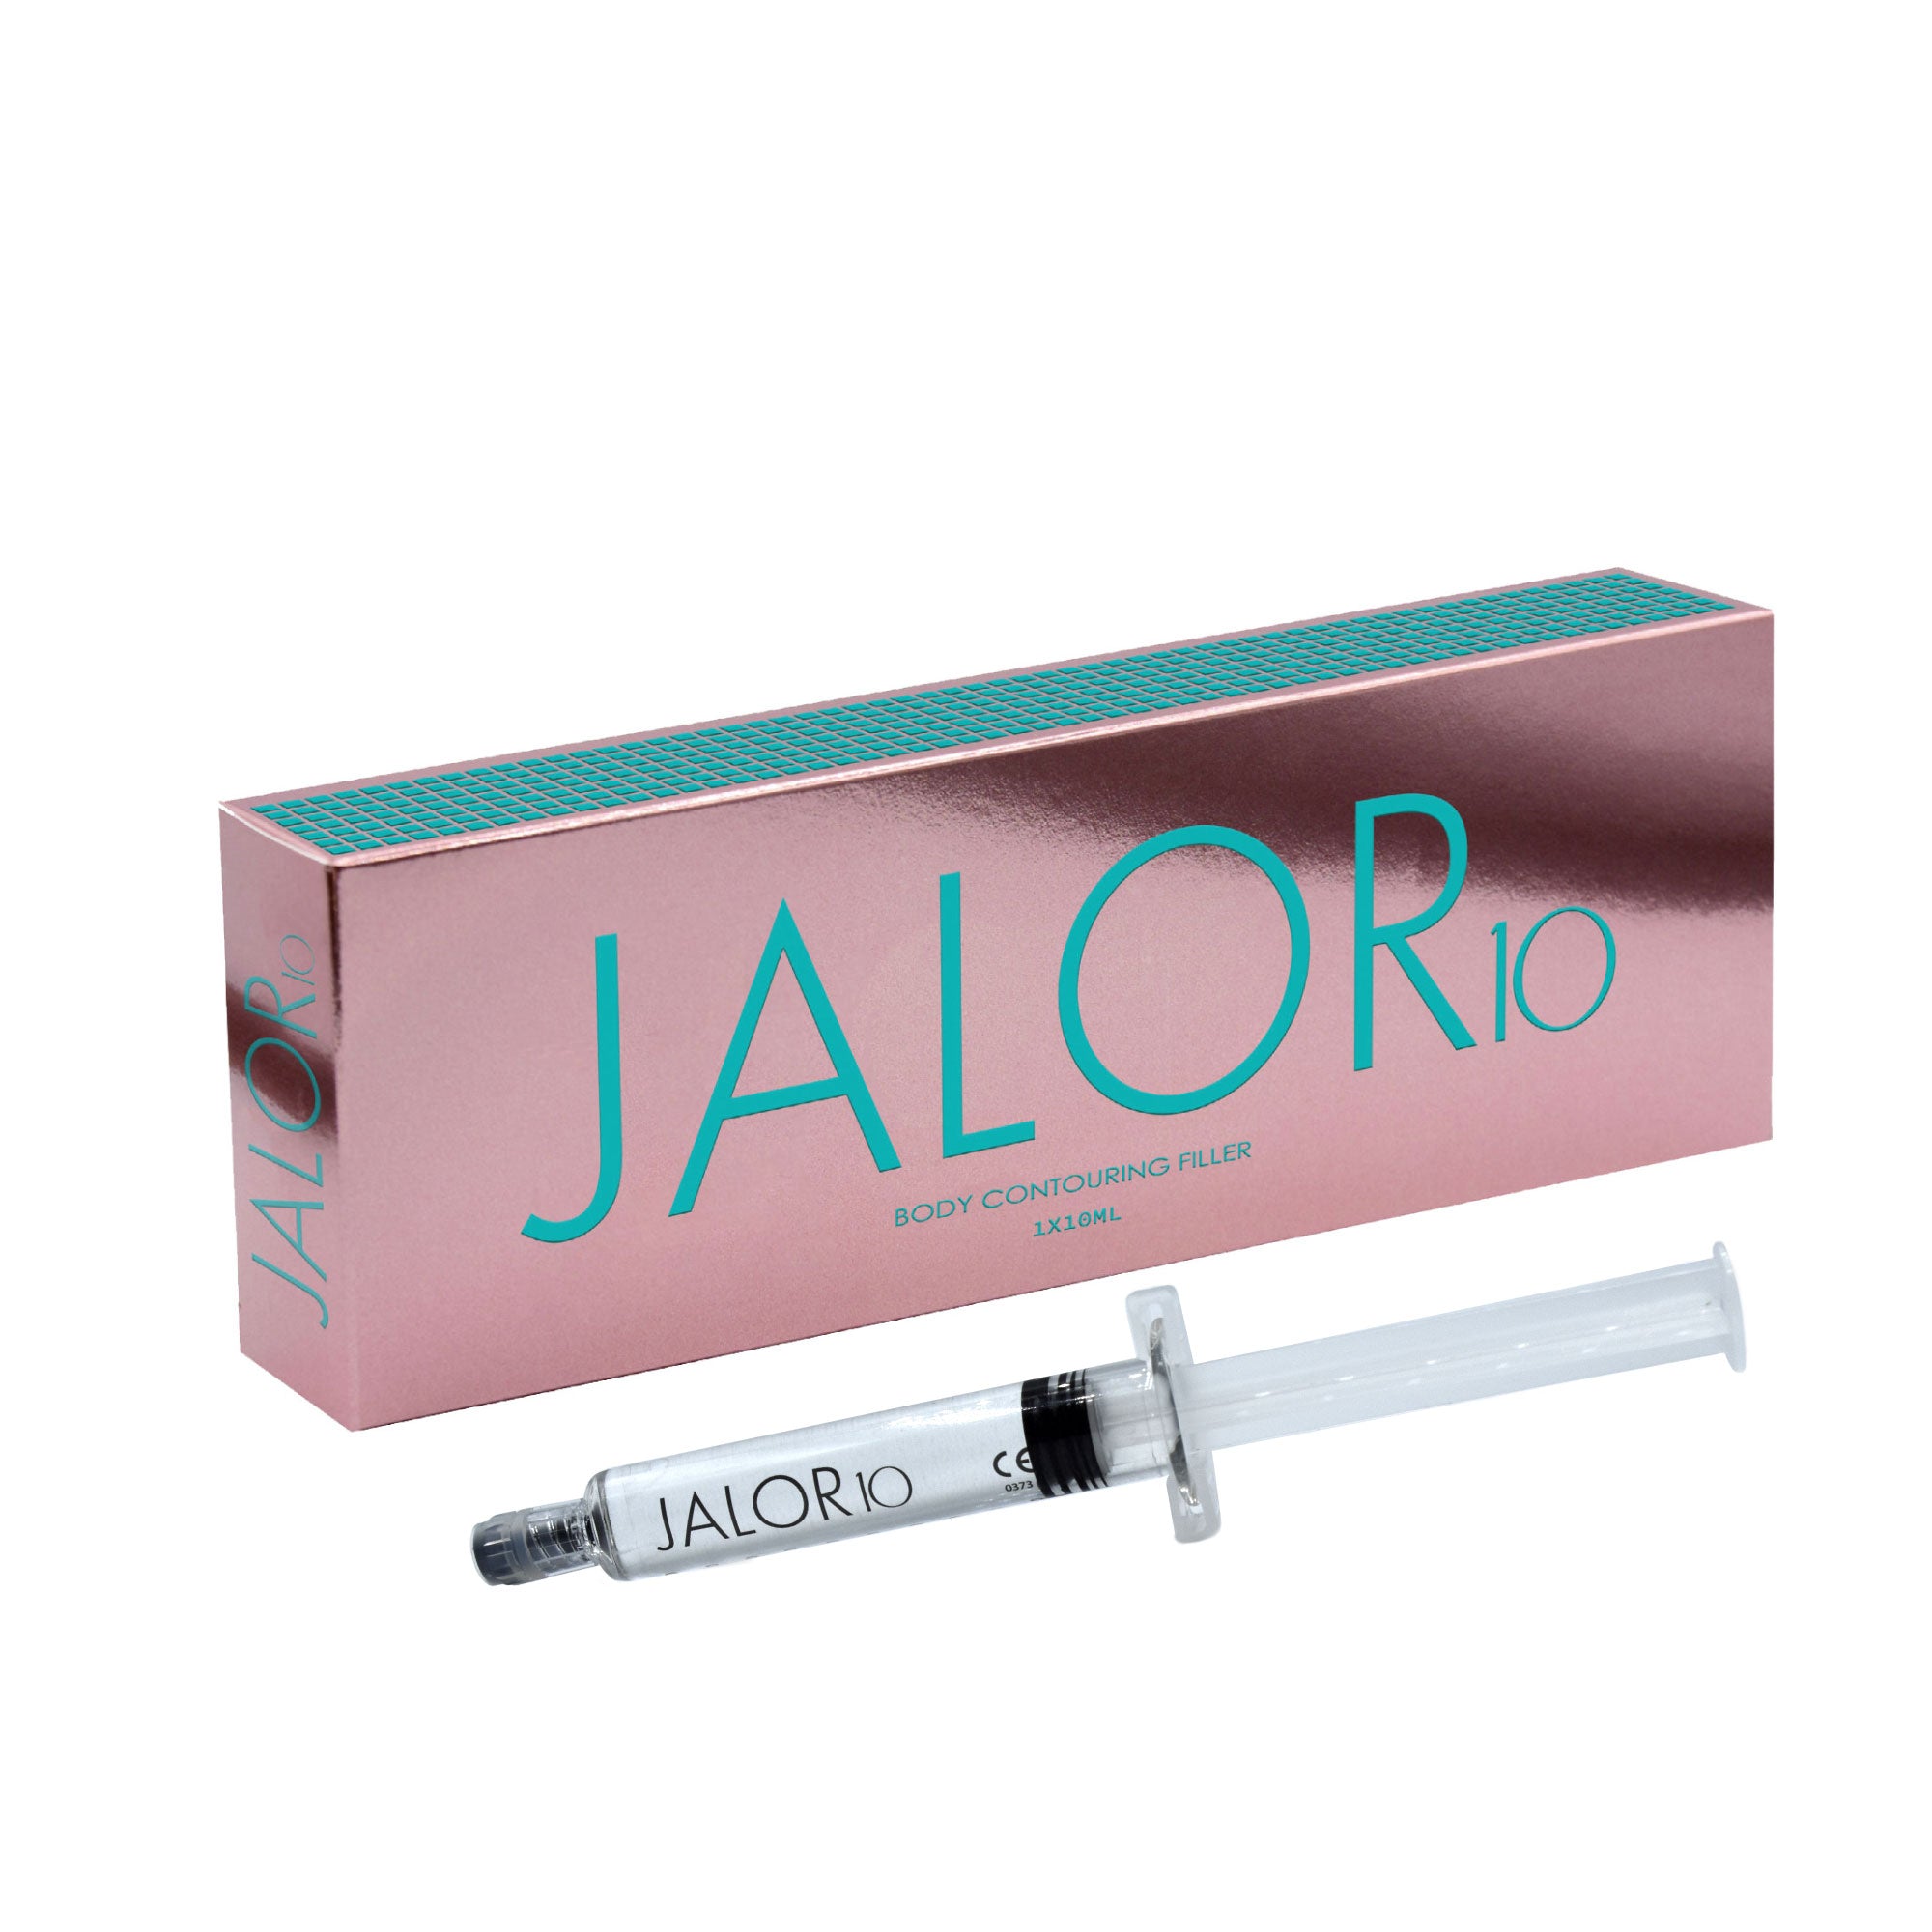 JALOR 10 – Füllstoff für die Rekonstruktion der Körperkontur